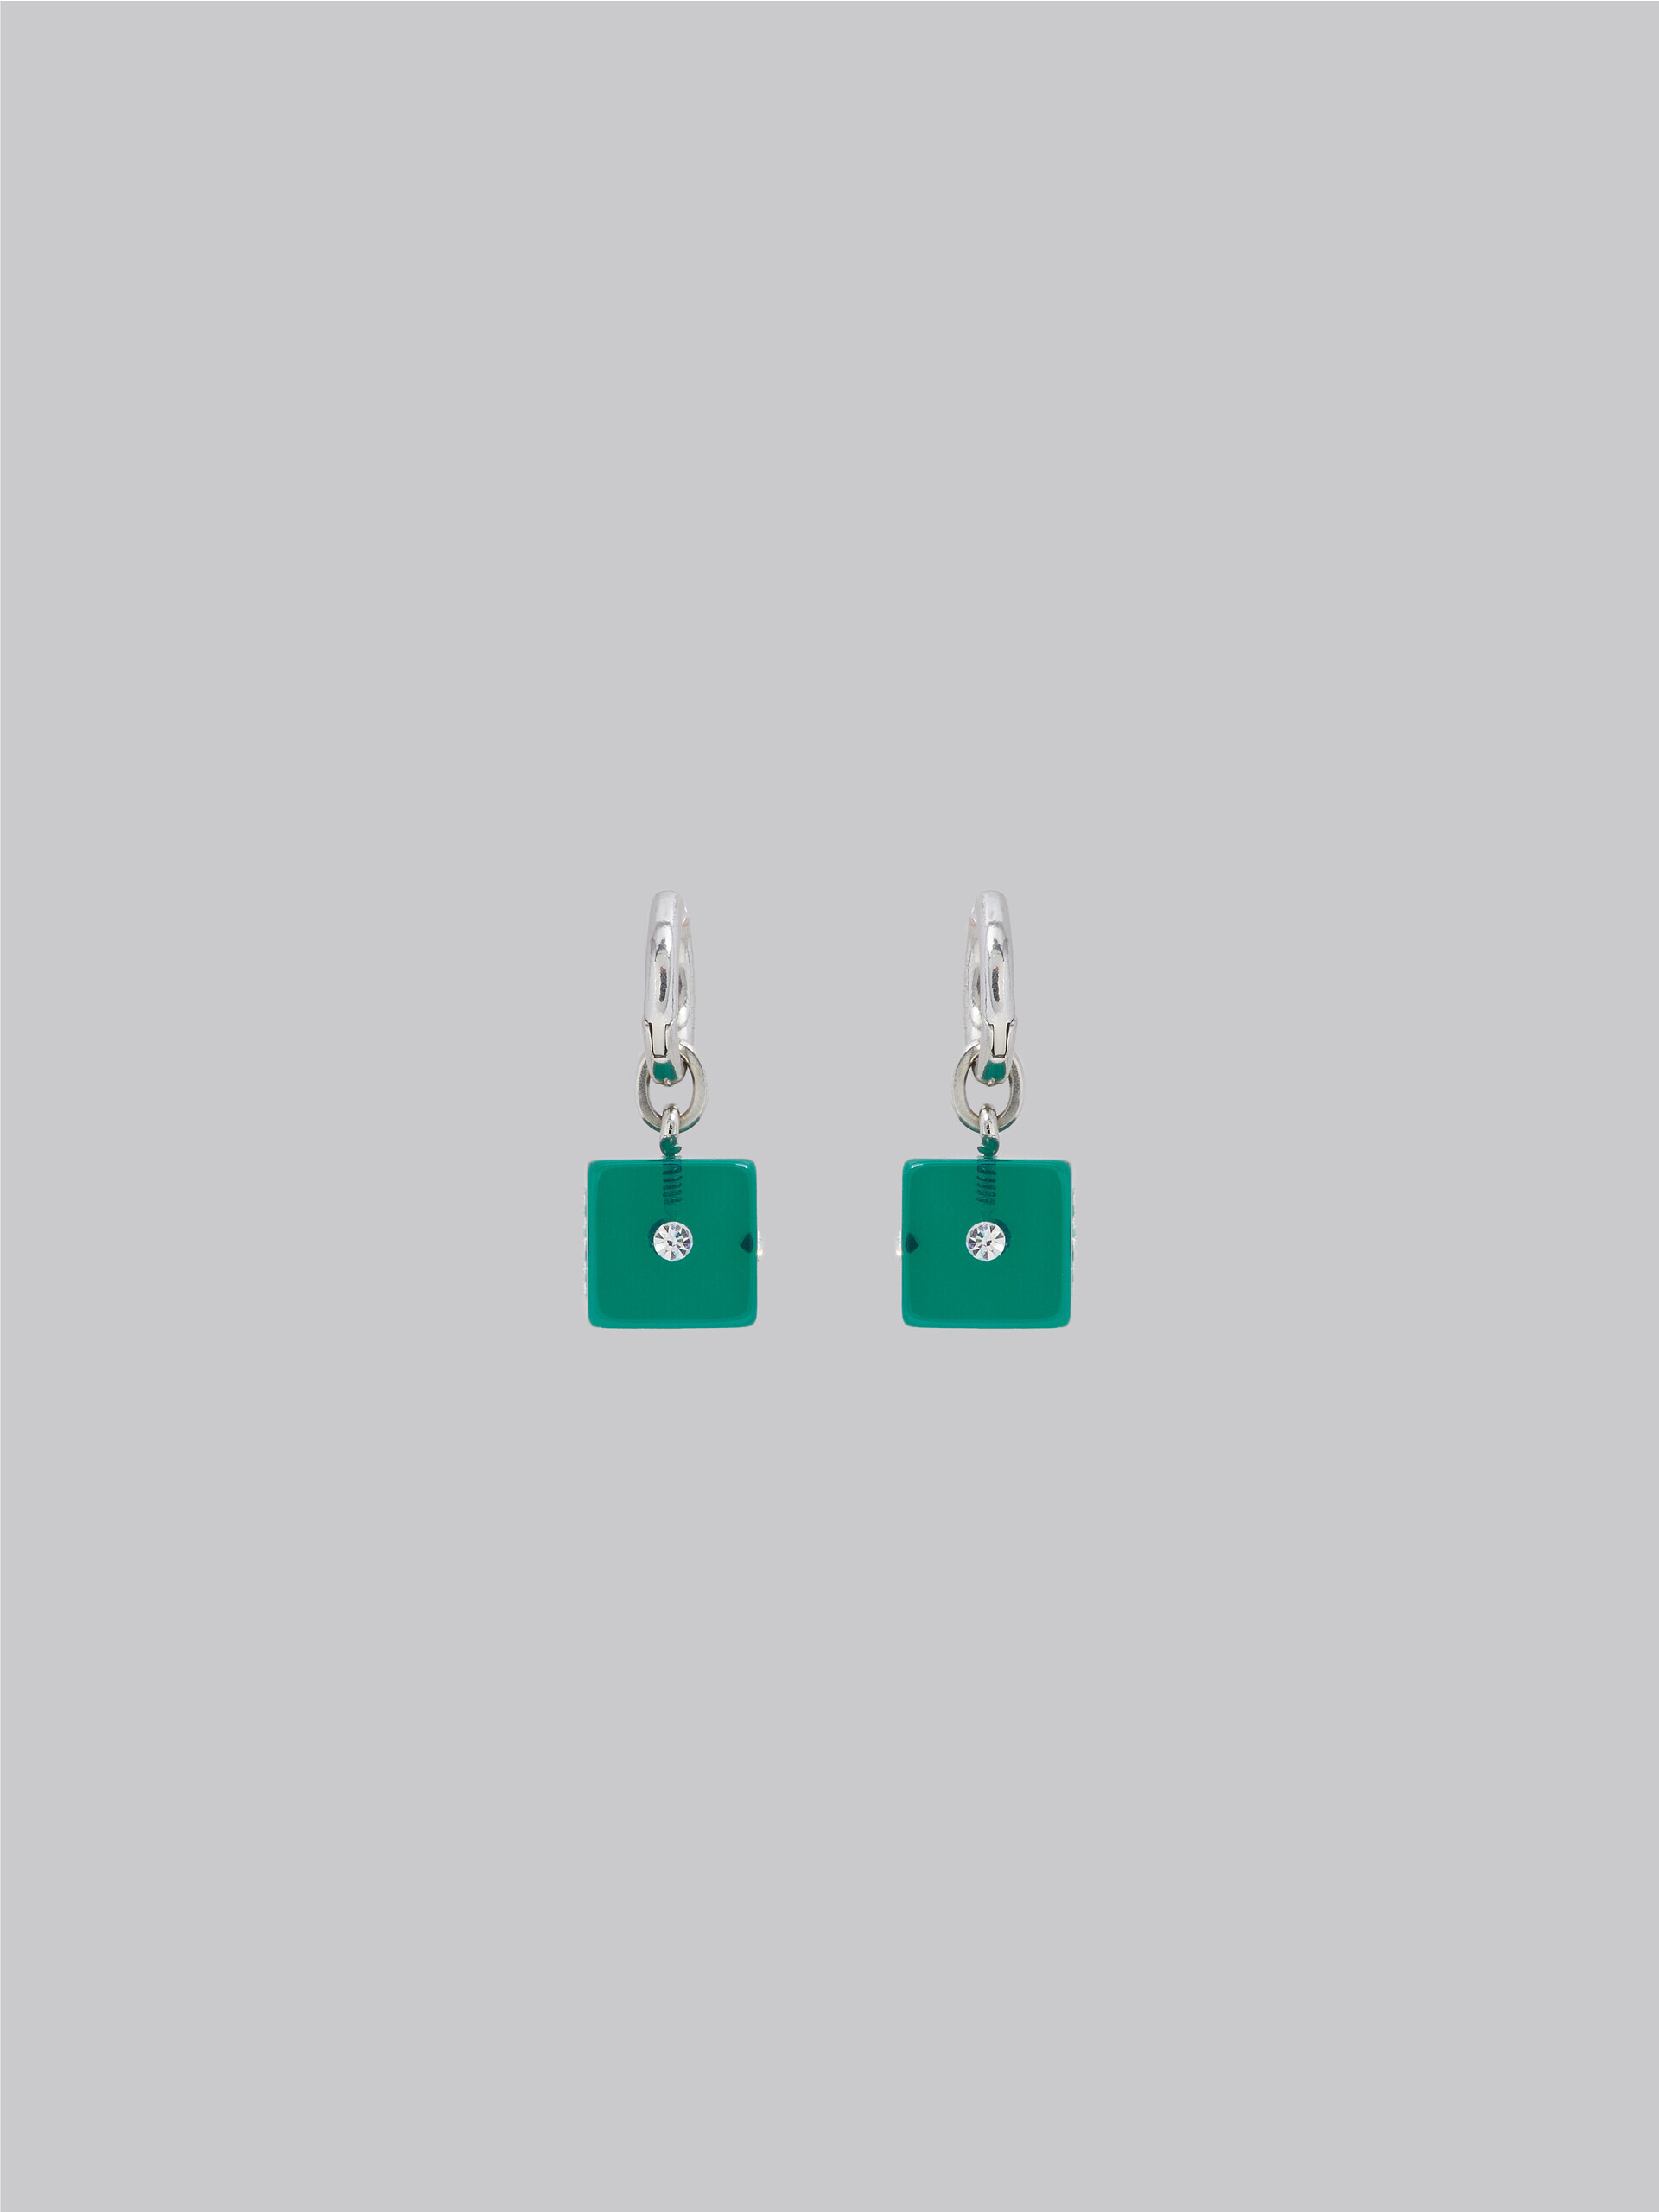 Resin dice charm earrings - Earrings - Image 3